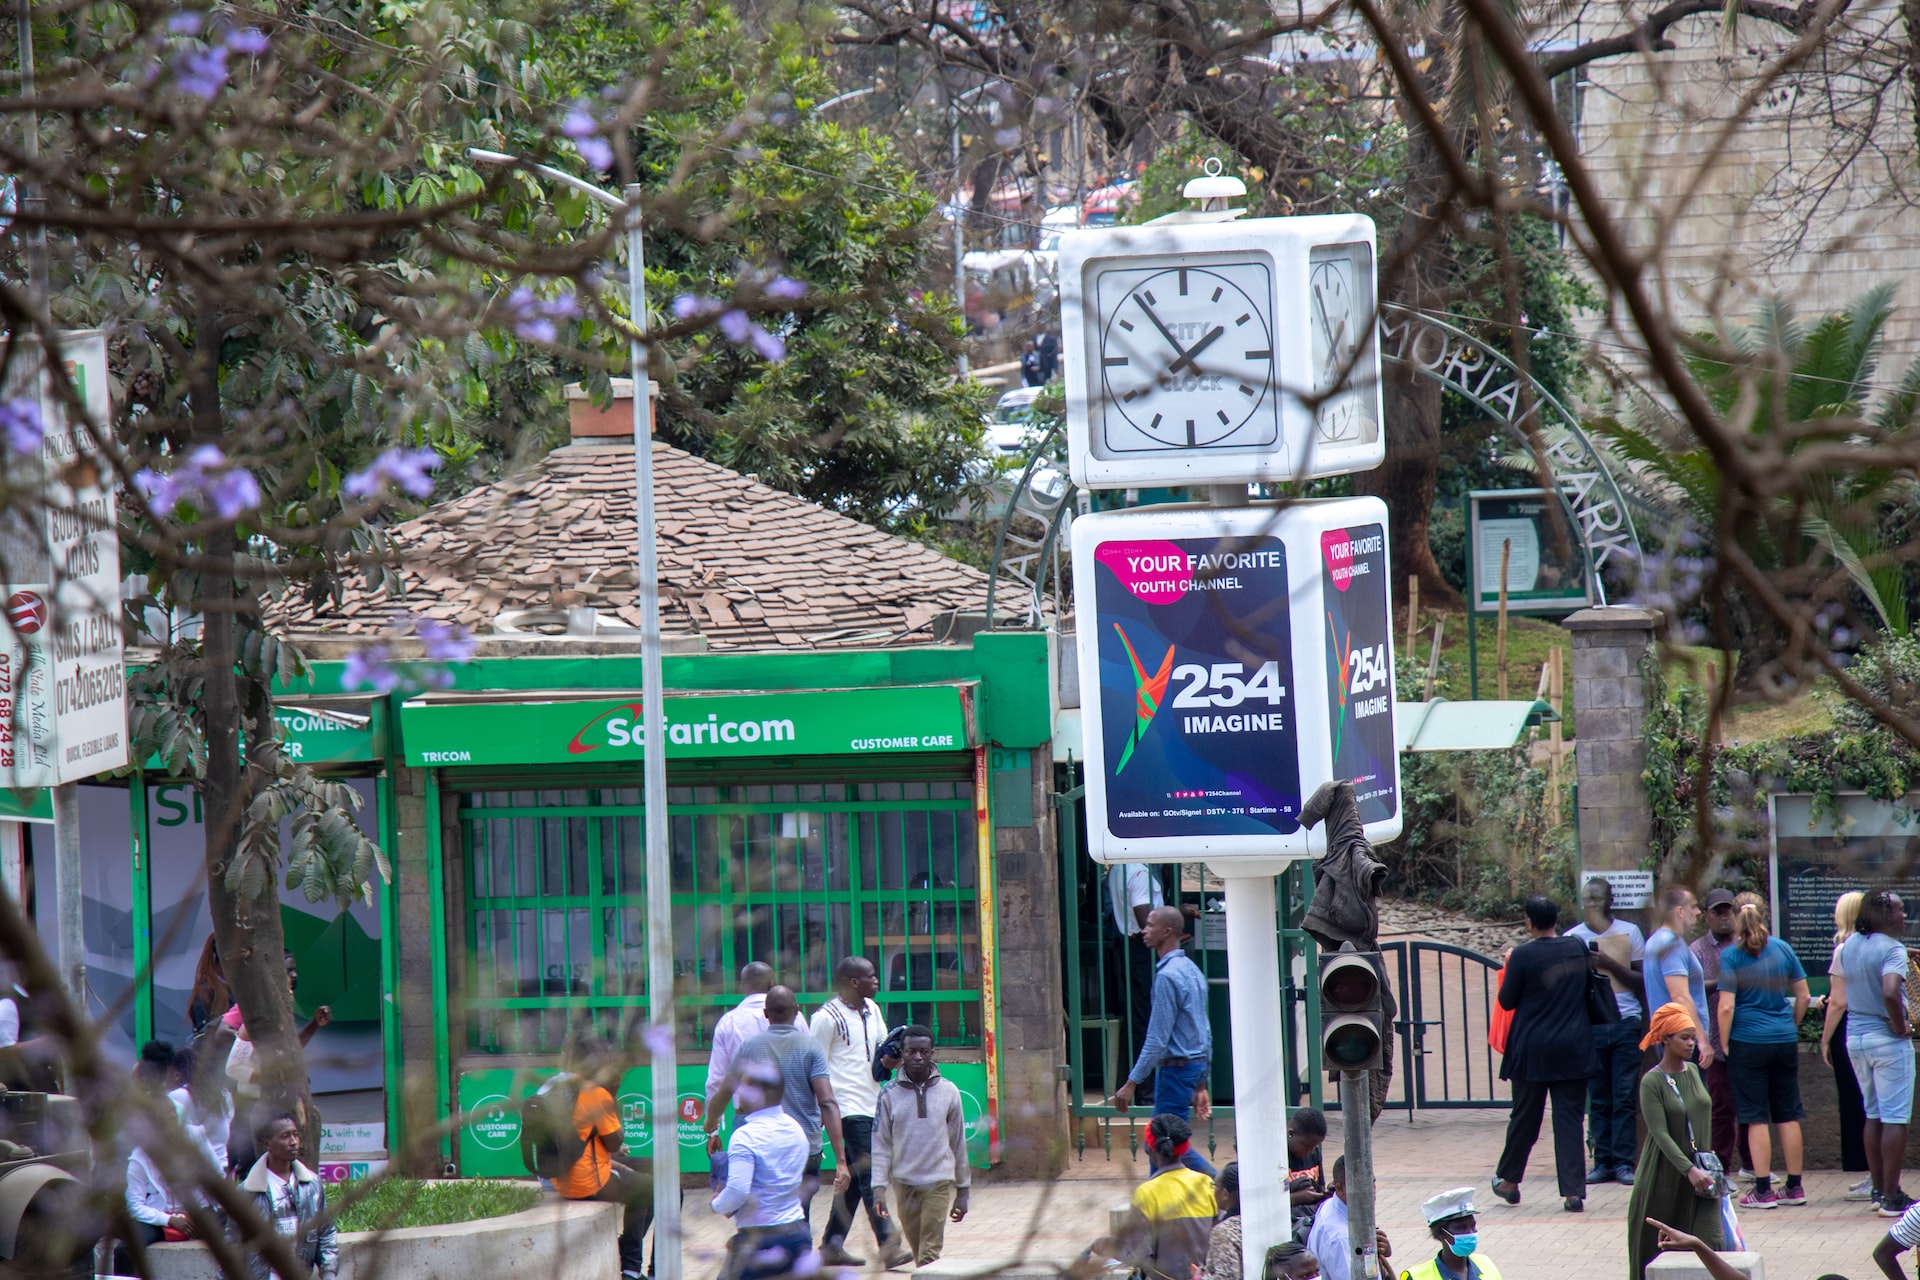 Kenya’s central financial institution slashes digital mortgage burden